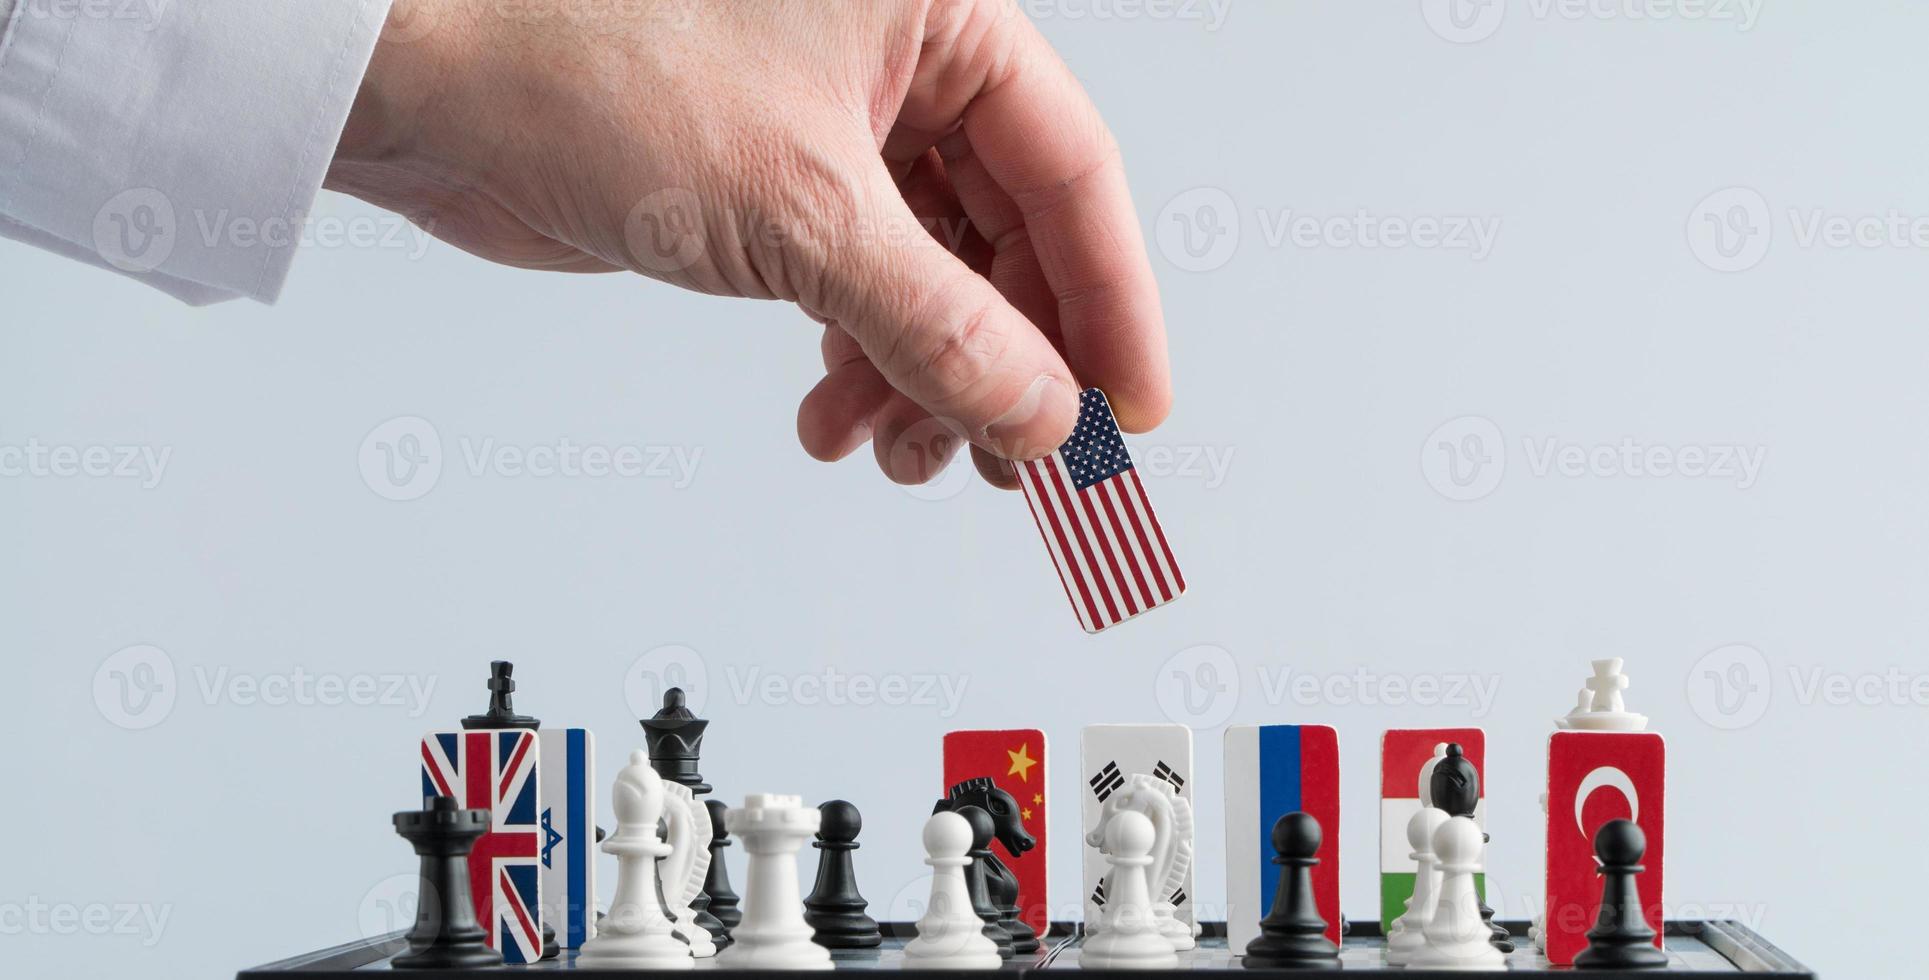 a mão do político move uma peça de xadrez com uma bandeira. foto conceitual de um jogo político. movimento de retaliação eua